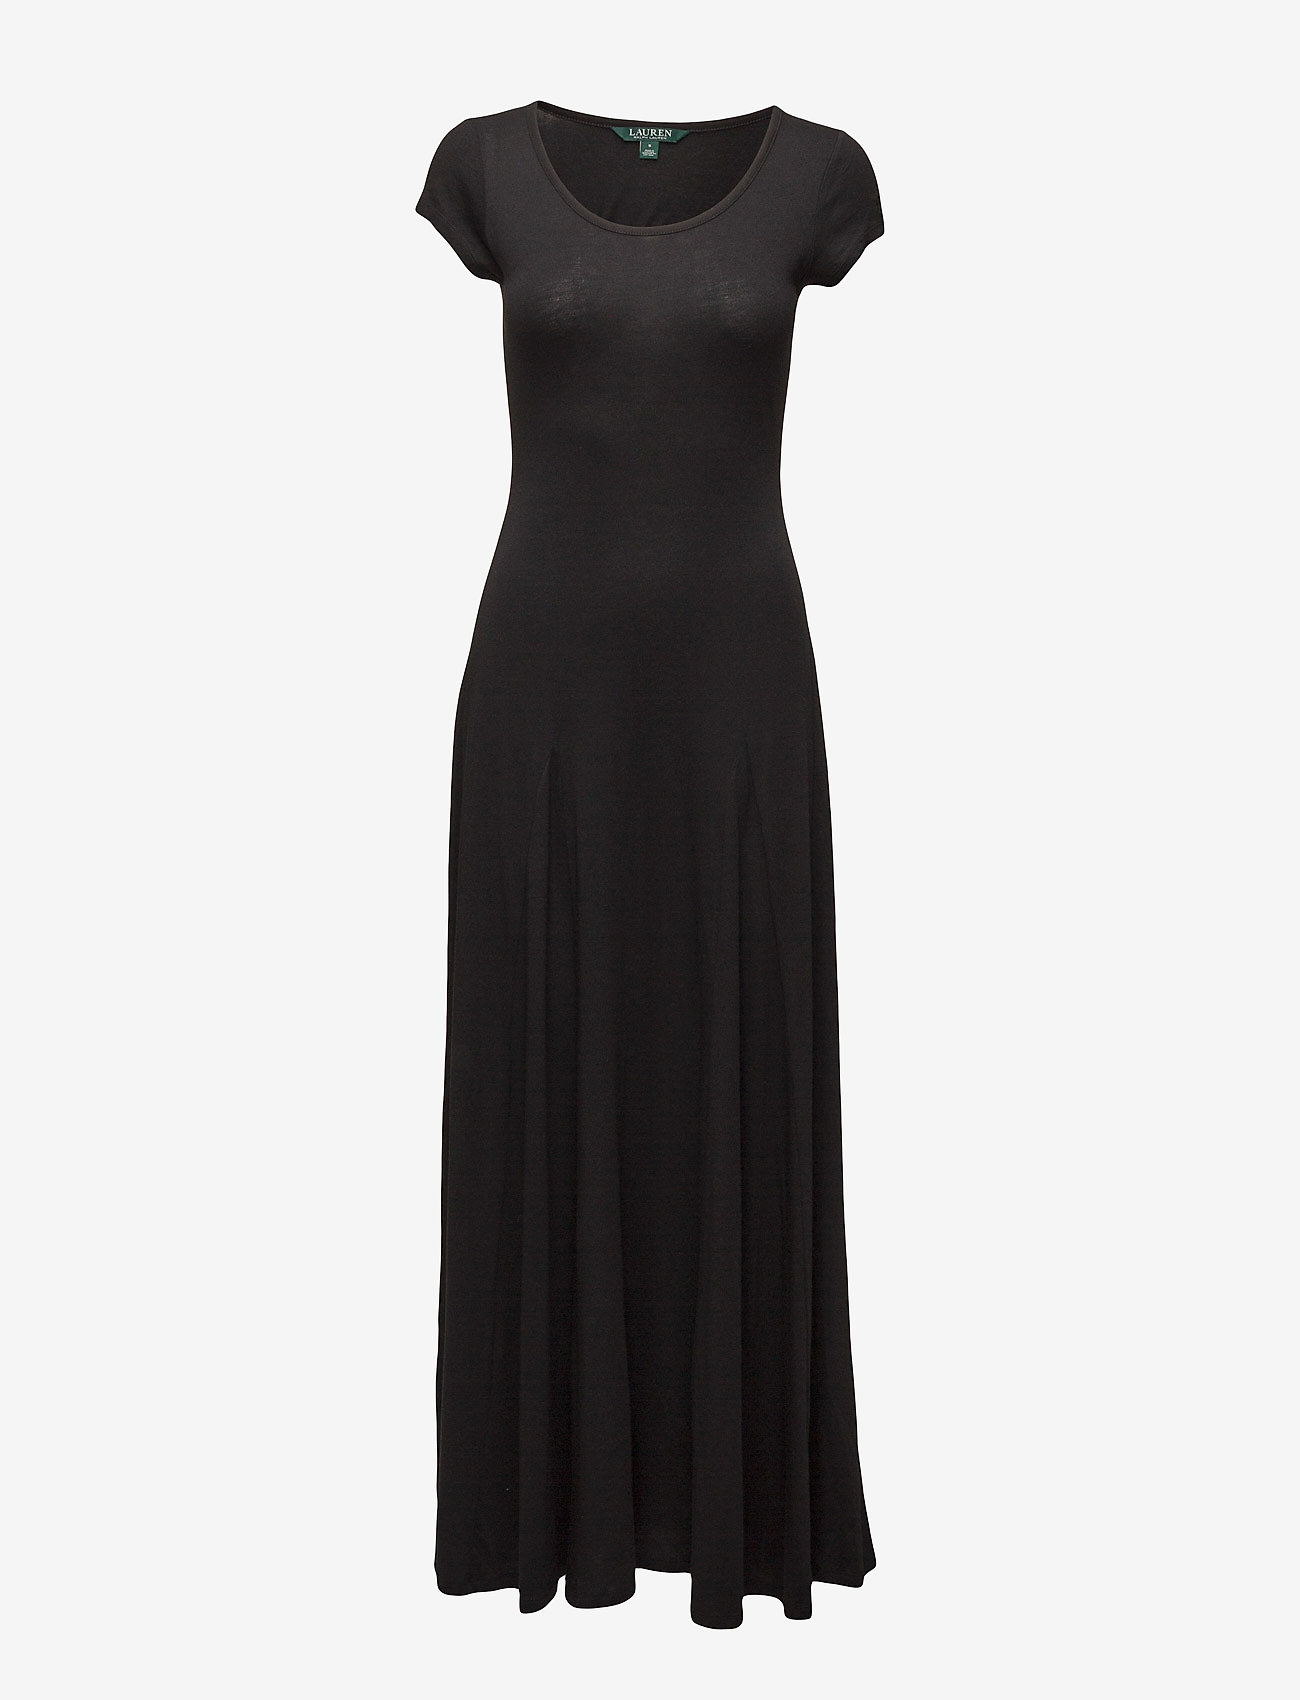 rebecca taylor black lace ruffle dress